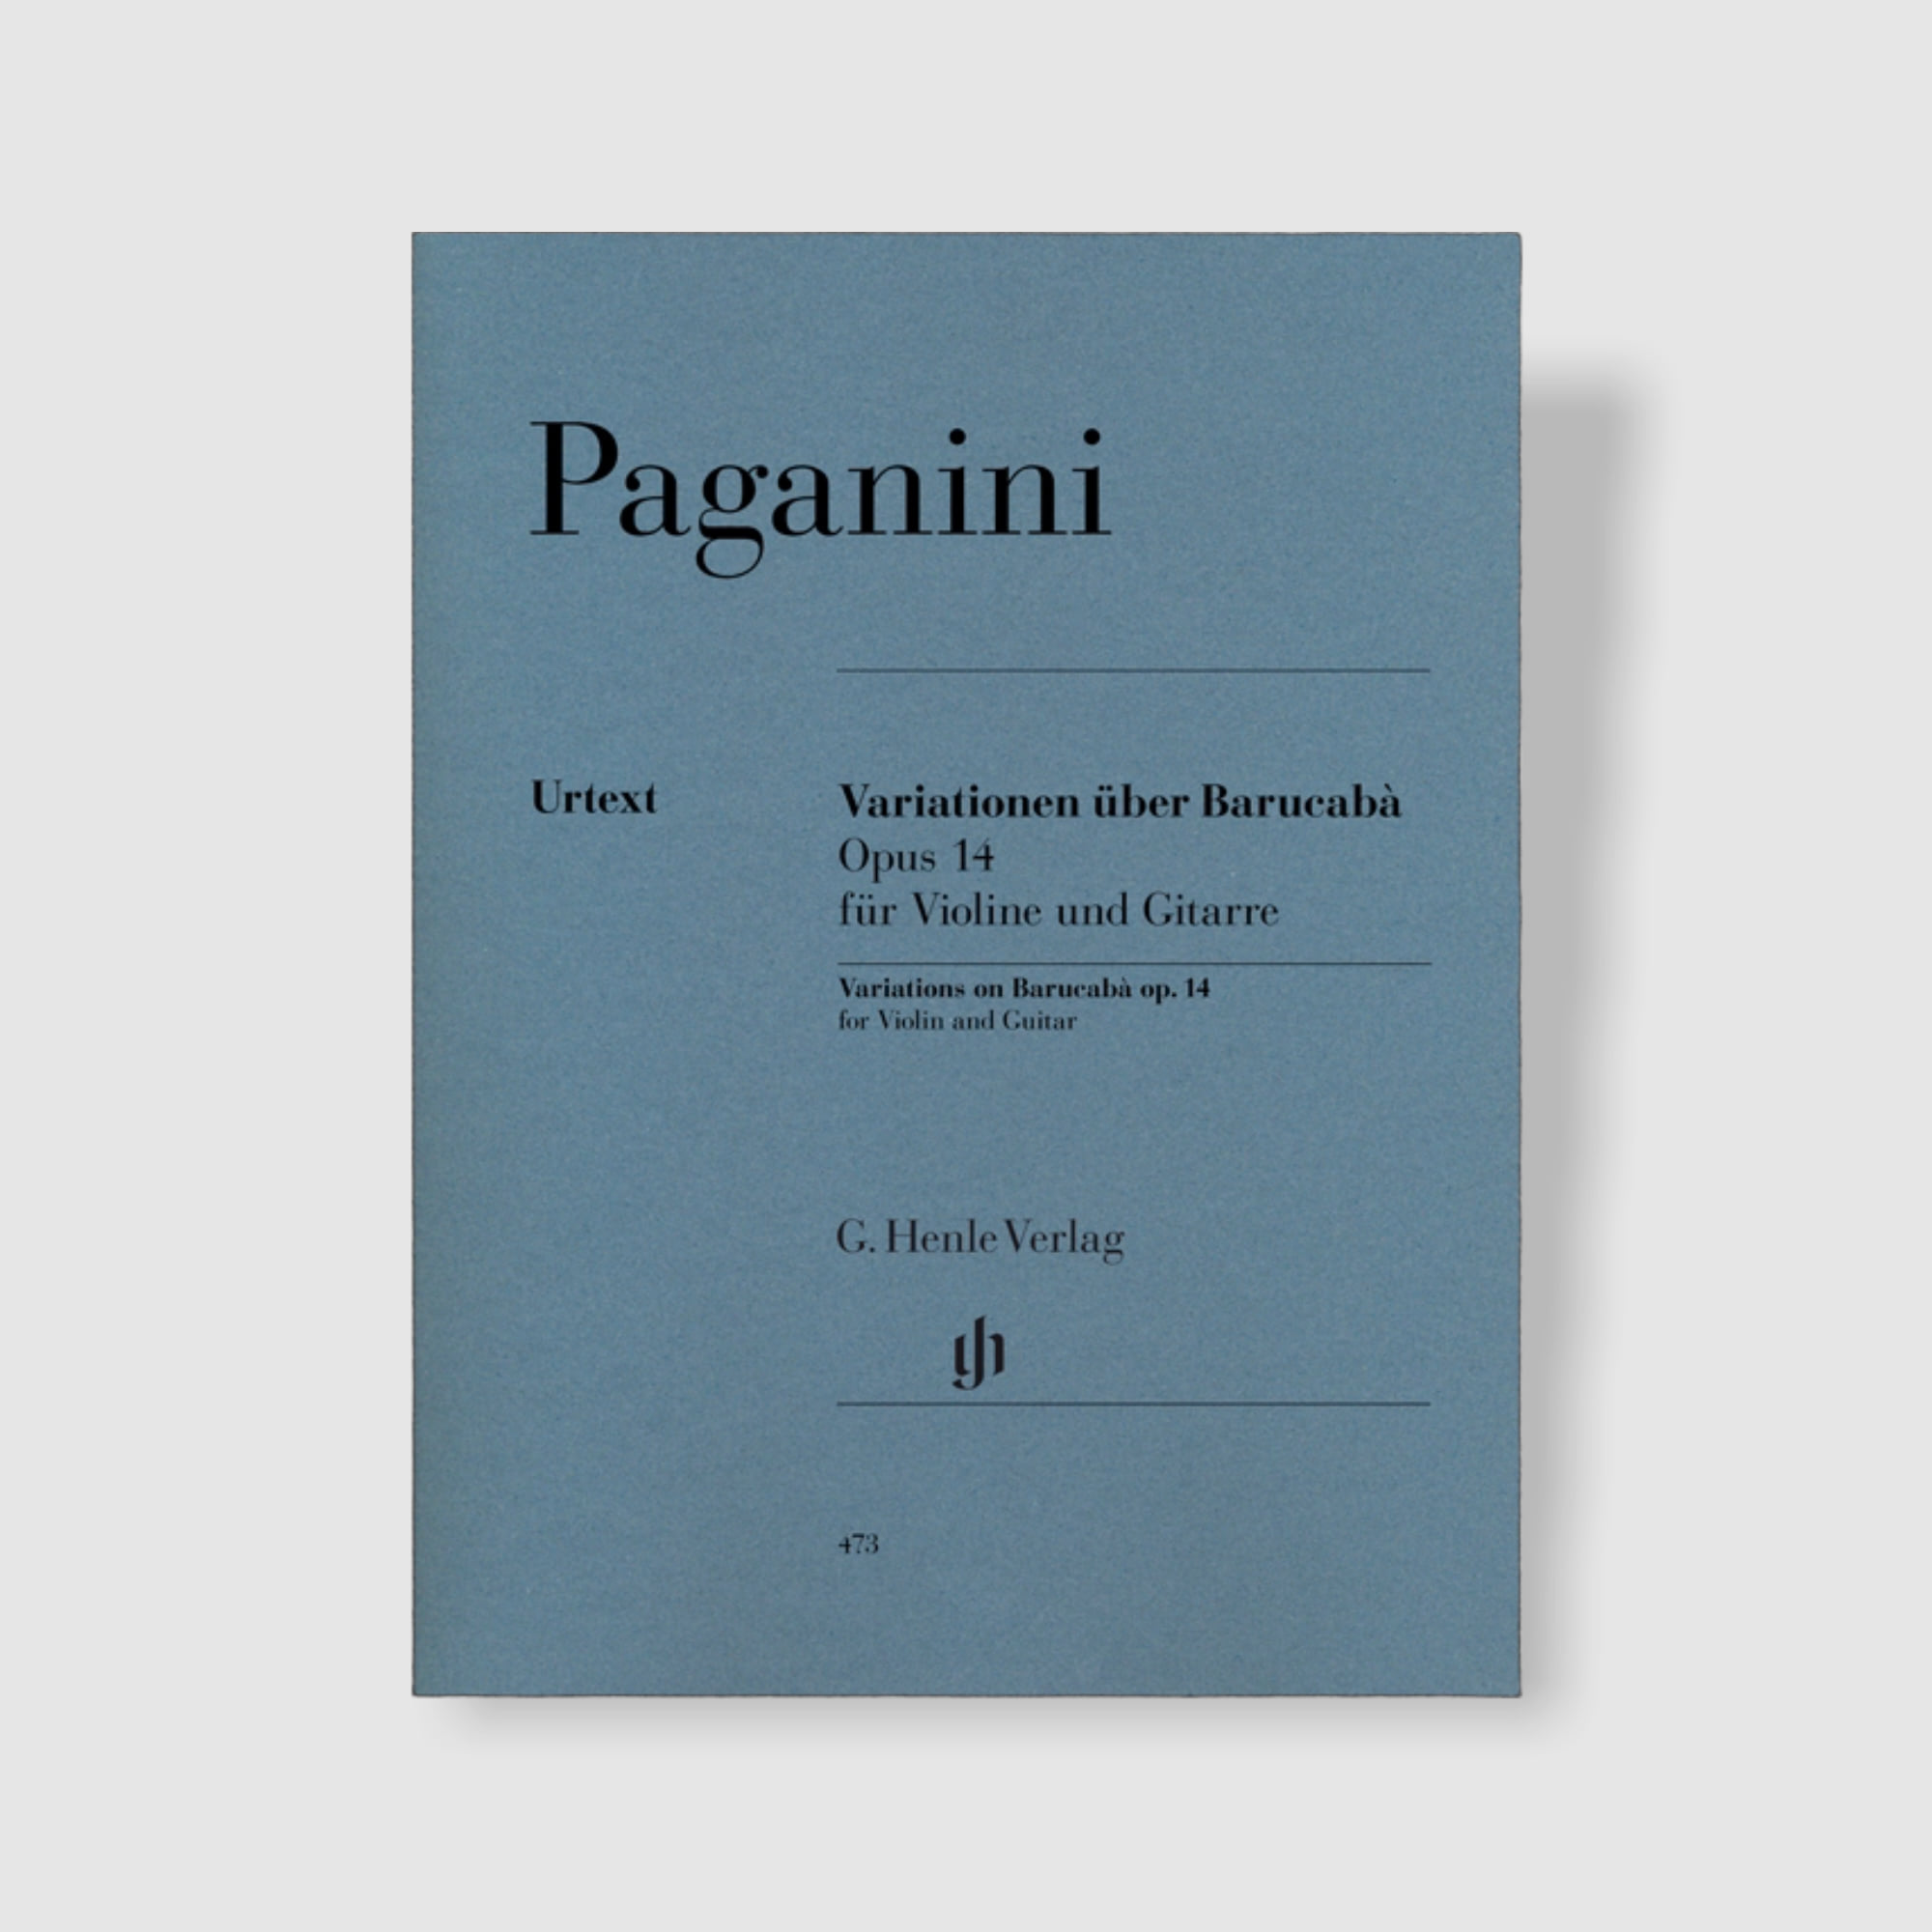 파가니니 바이올린과 기타를 위한 파가니니 부라카바 변주곡 Op. 14